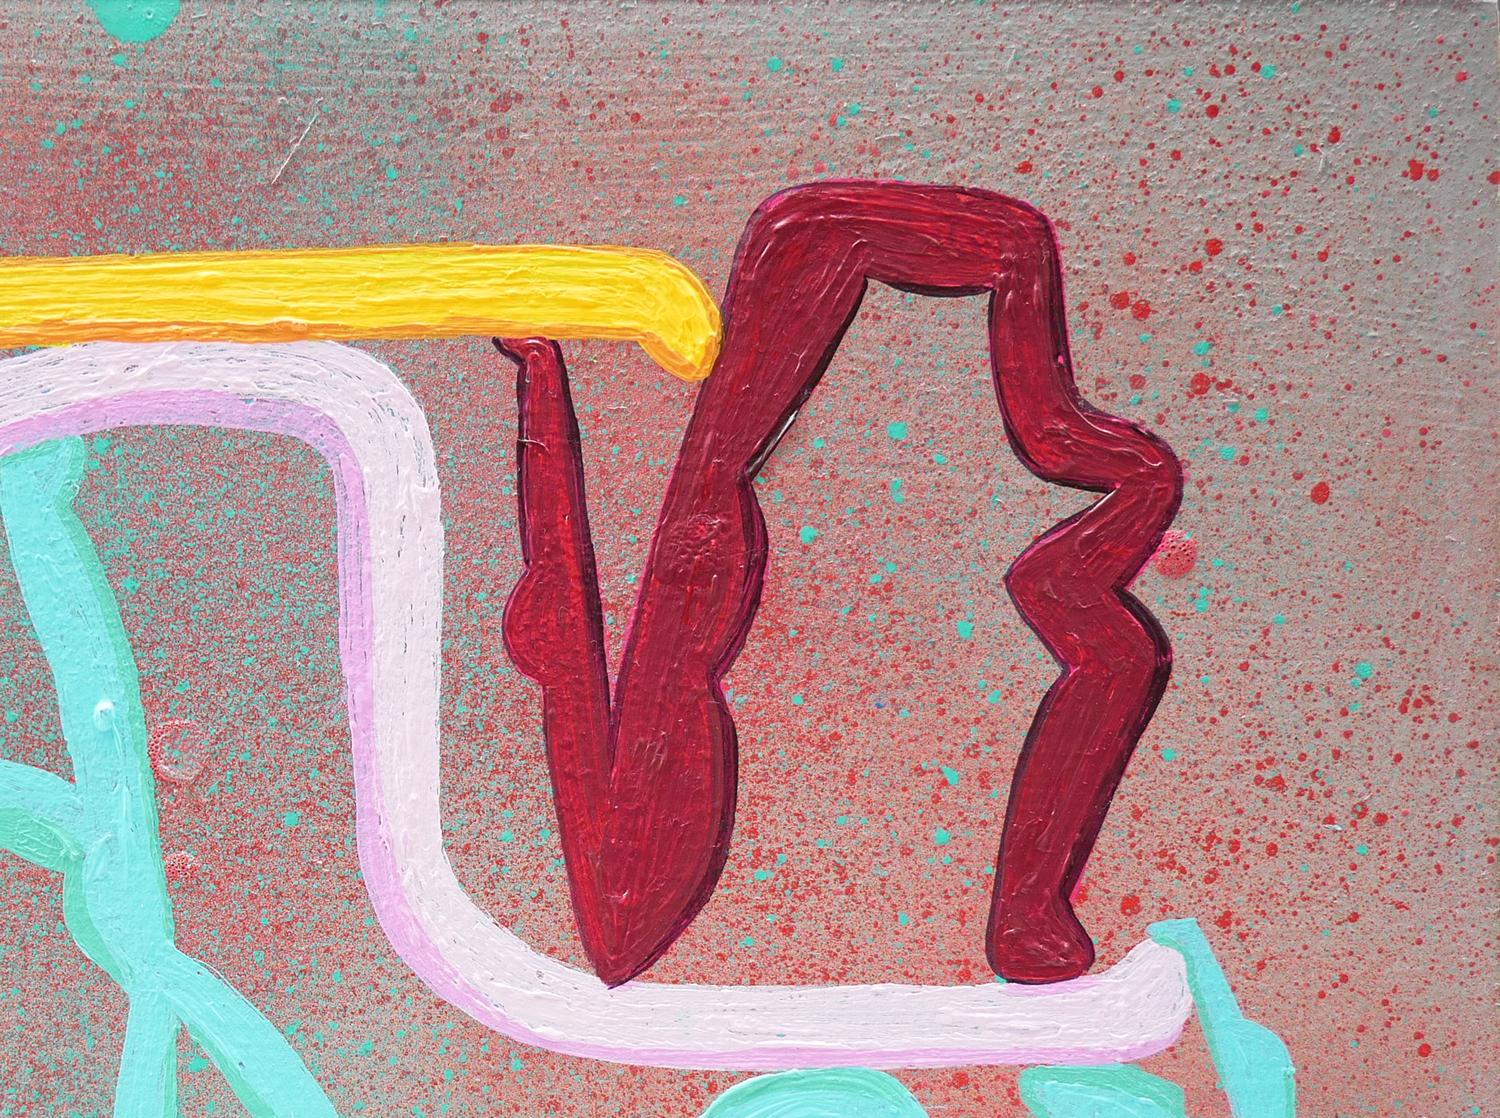 Himmelblau, rosa, gelb, kastanienbraun und rot abstrakte geometrische zeitgenössische Malerei von Peter Healy aus Houston, TX. Das Werk zeigt bunte Strichmännchen vor einem grauen und rosafarbenen Hintergrund. Dieses Gemälde wurde 2022 in der